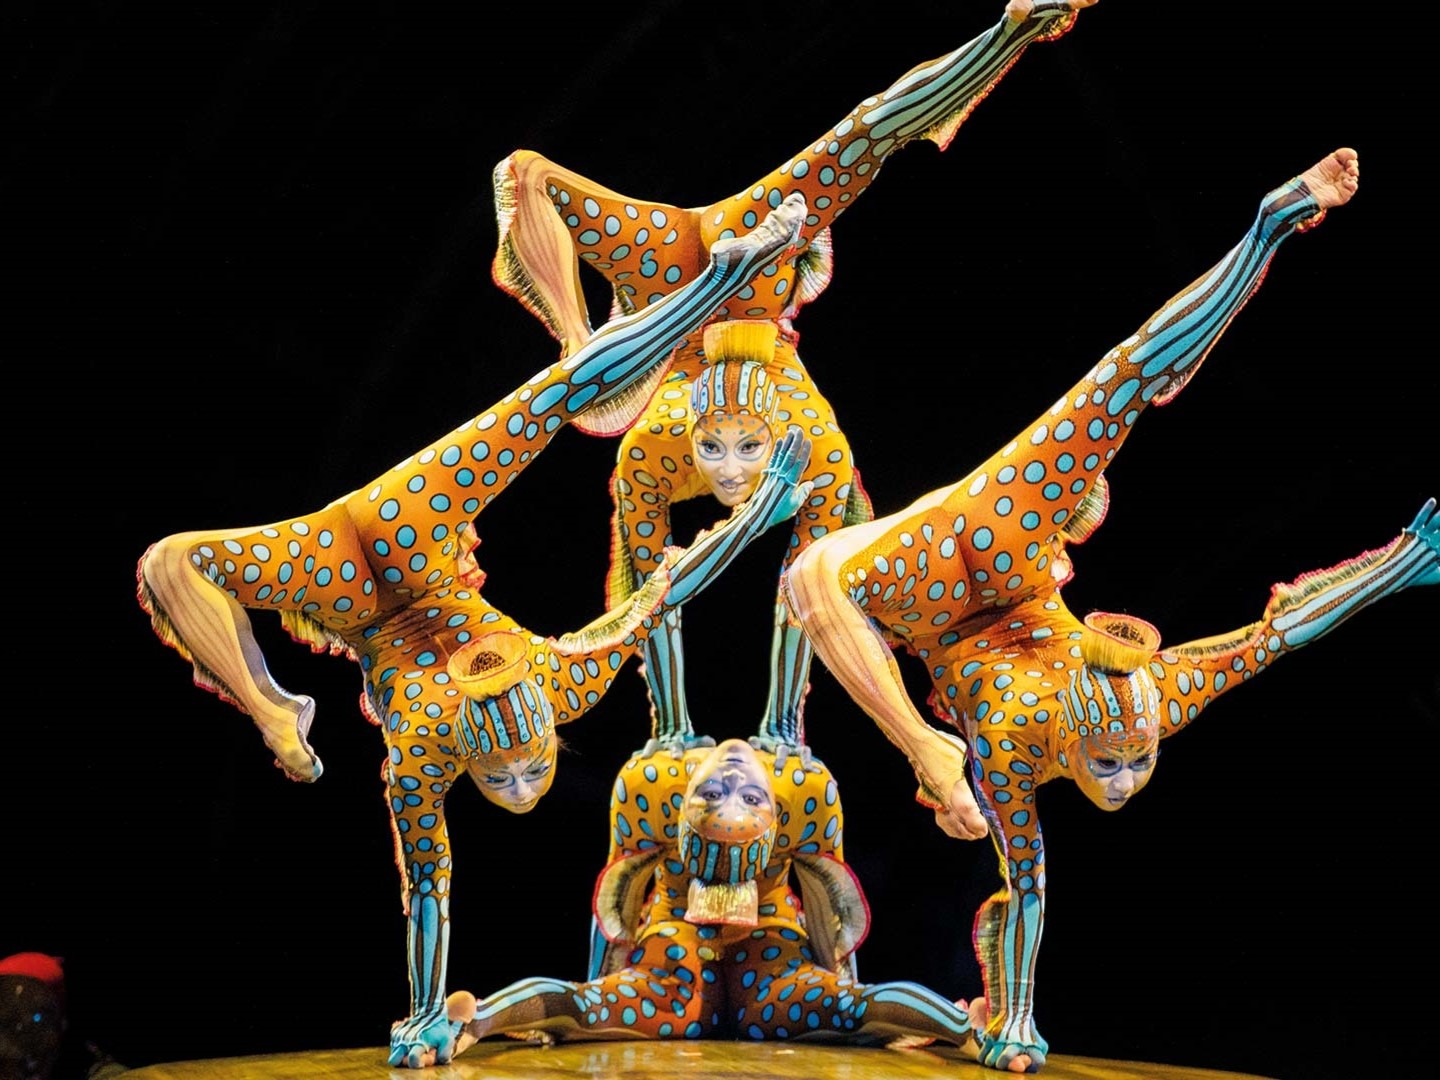 Fesselnde Geschichten, künstlerische Perfektion und emotionale Tiefe: Cirque du Soleil